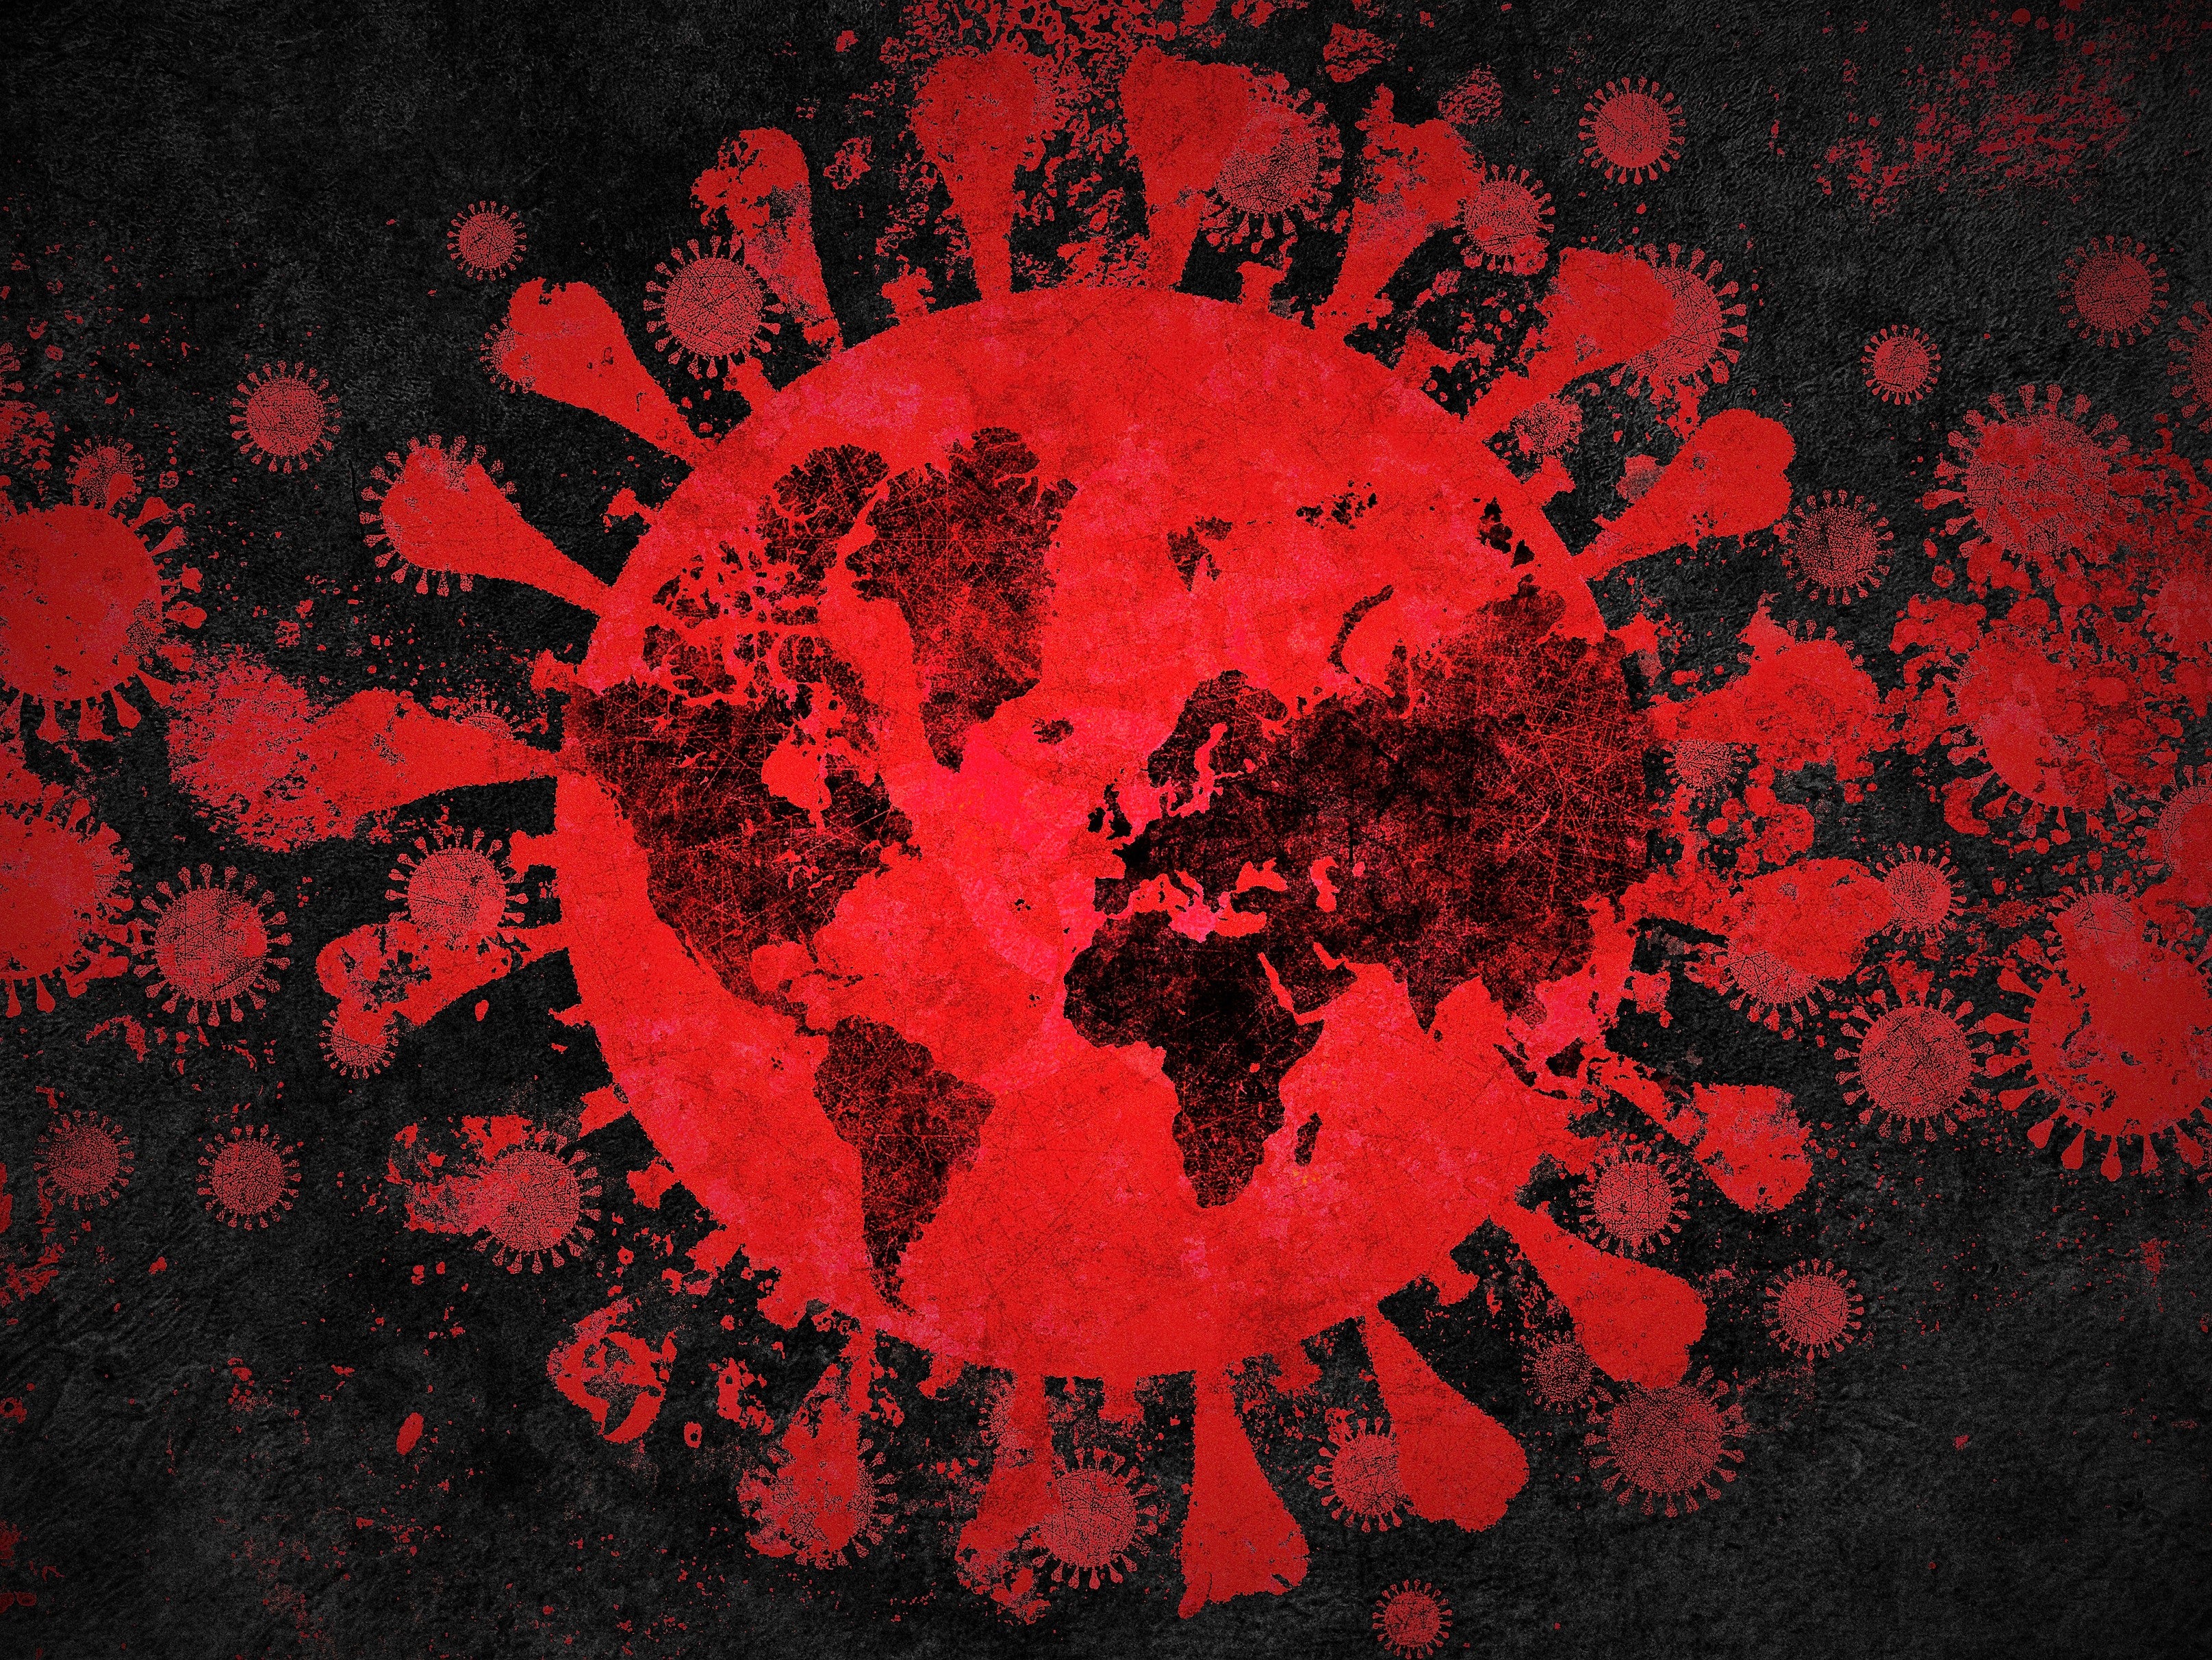 Cases of coronavirus around the world are increasing by around 300,000 per day